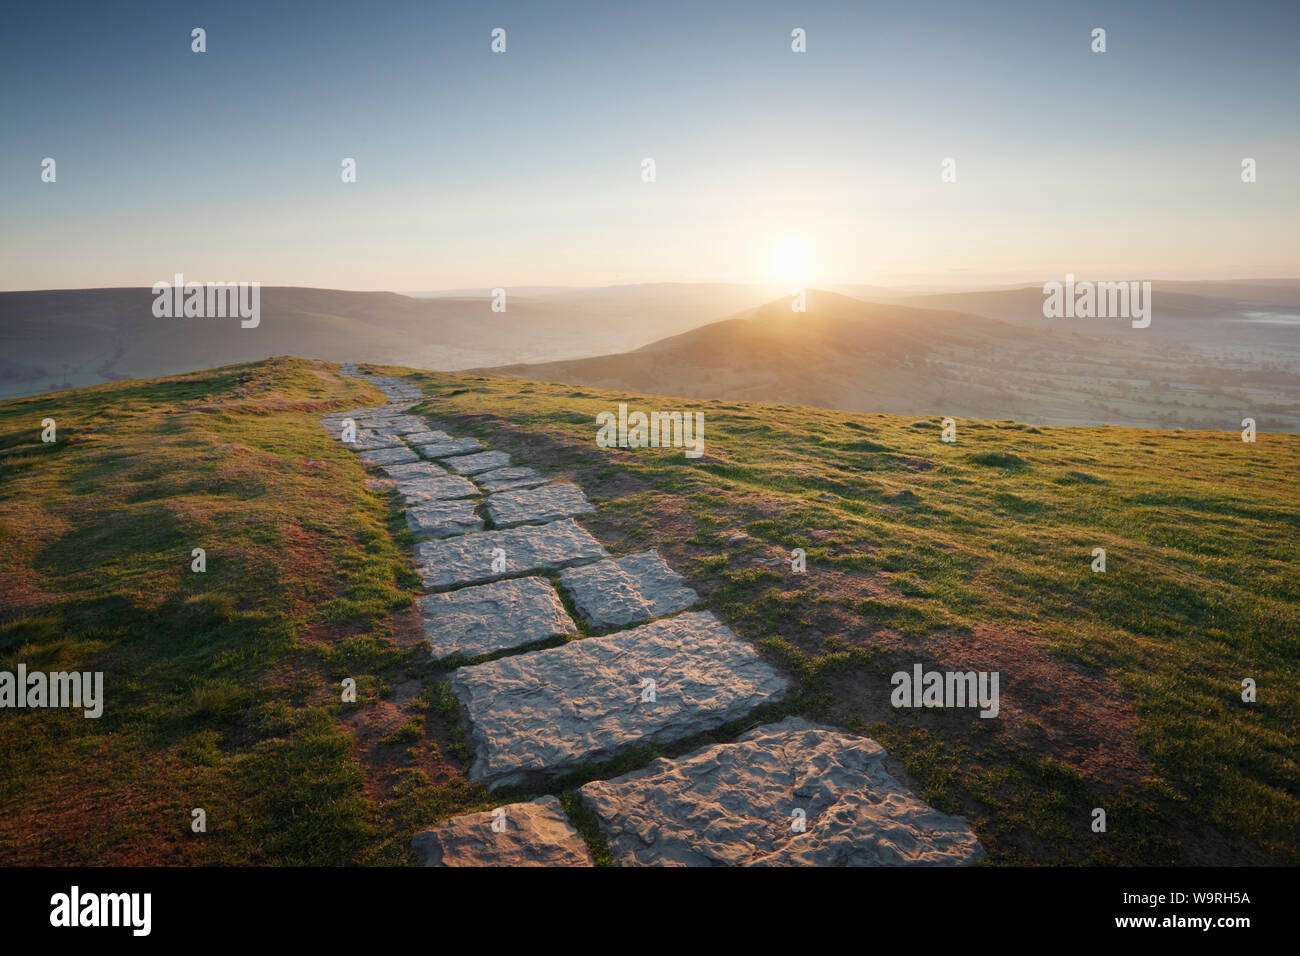 Il sentiero da Mam Tor per perdere la collina. Sunrise. Parco Nazionale di Peak District. Derbyshire. Regno Unito. Foto Stock